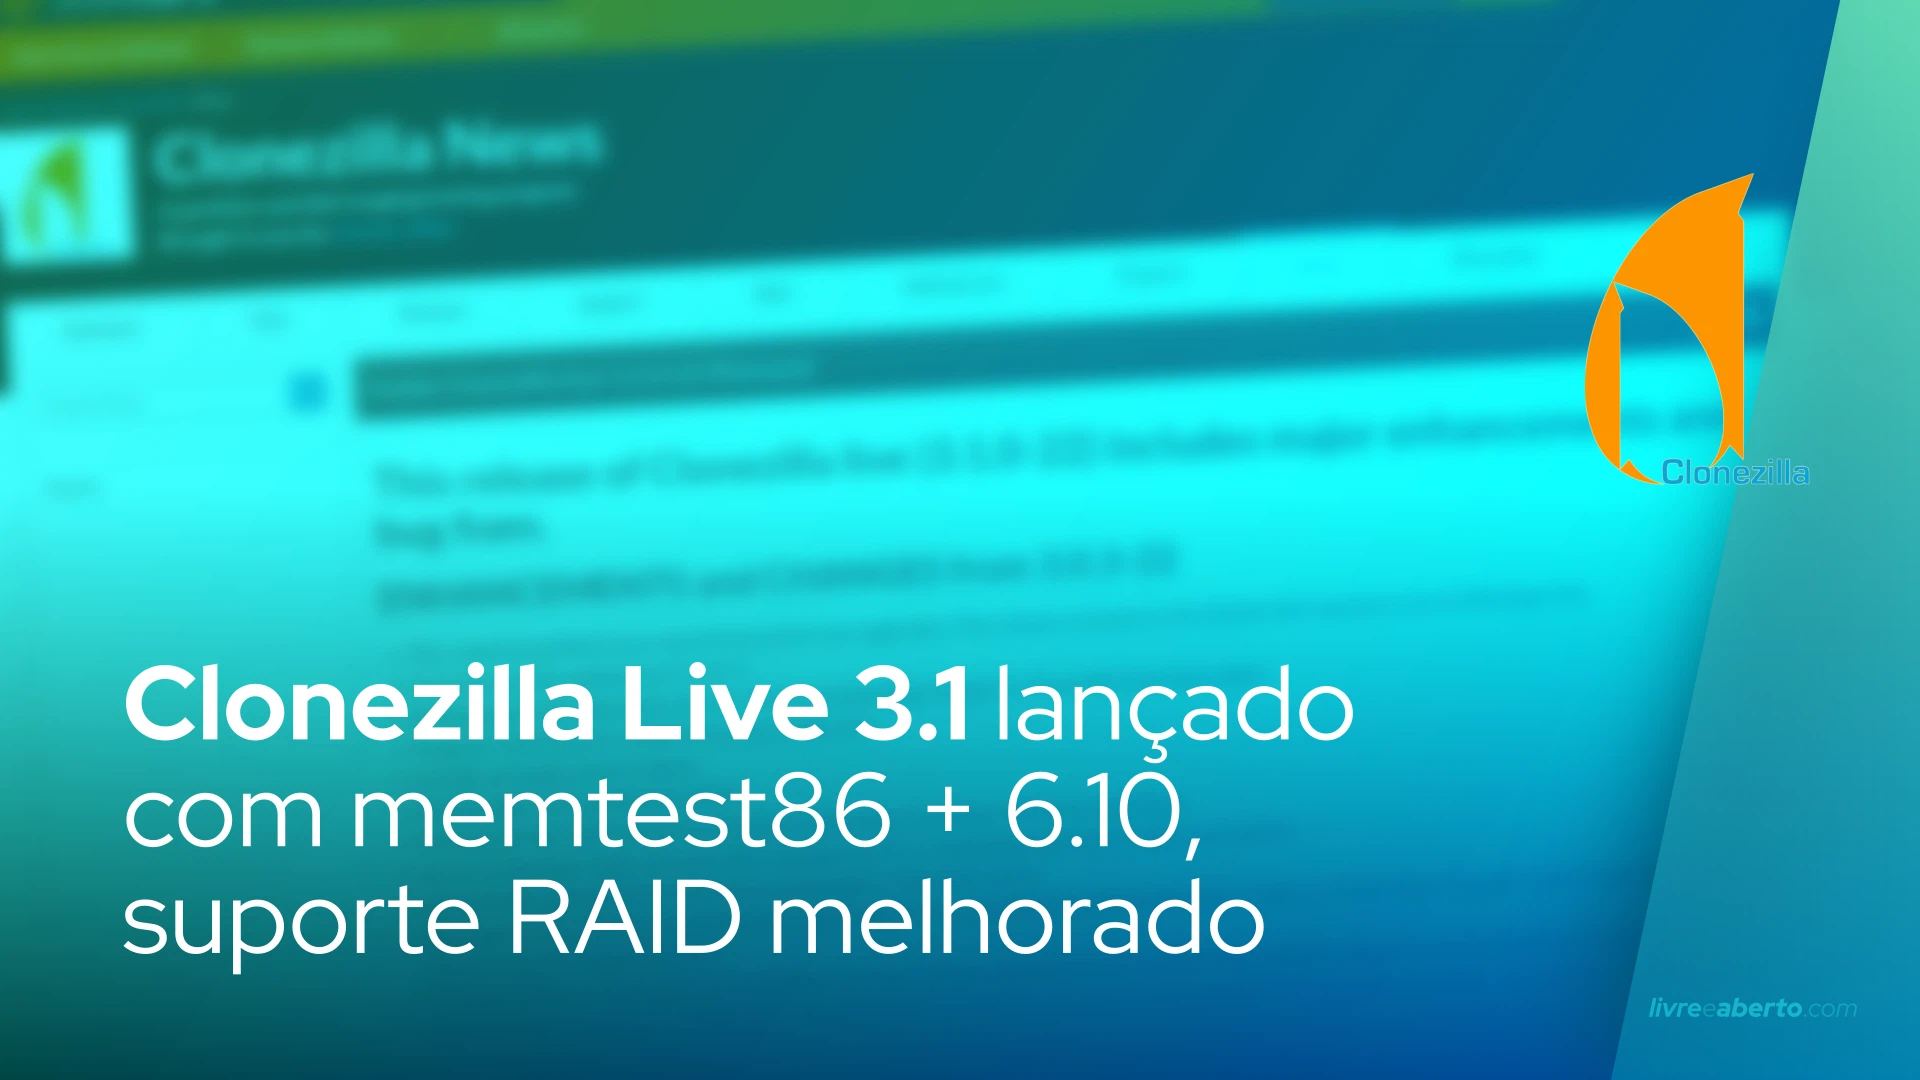 Clonezilla Live 3.1 lançado com memtest86 + 6.10, suporte RAID melhorado